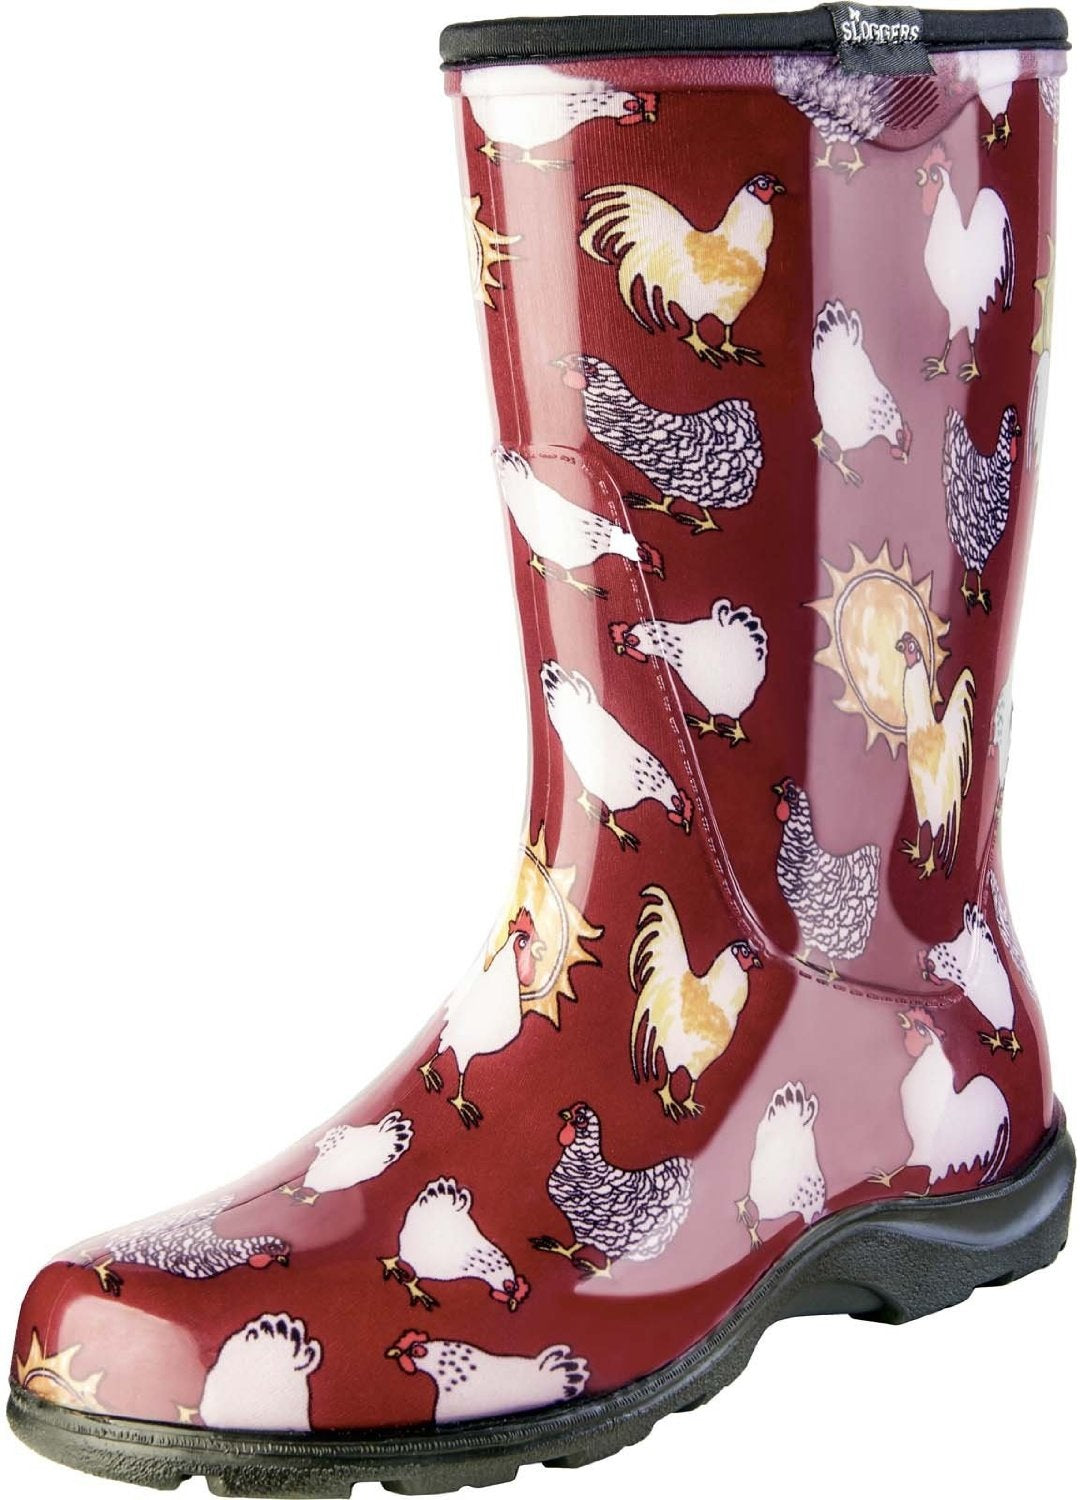 Sloggers 5016CBR10 Women's Rain & Garden Boot, Barn Red Chicken, Size 10